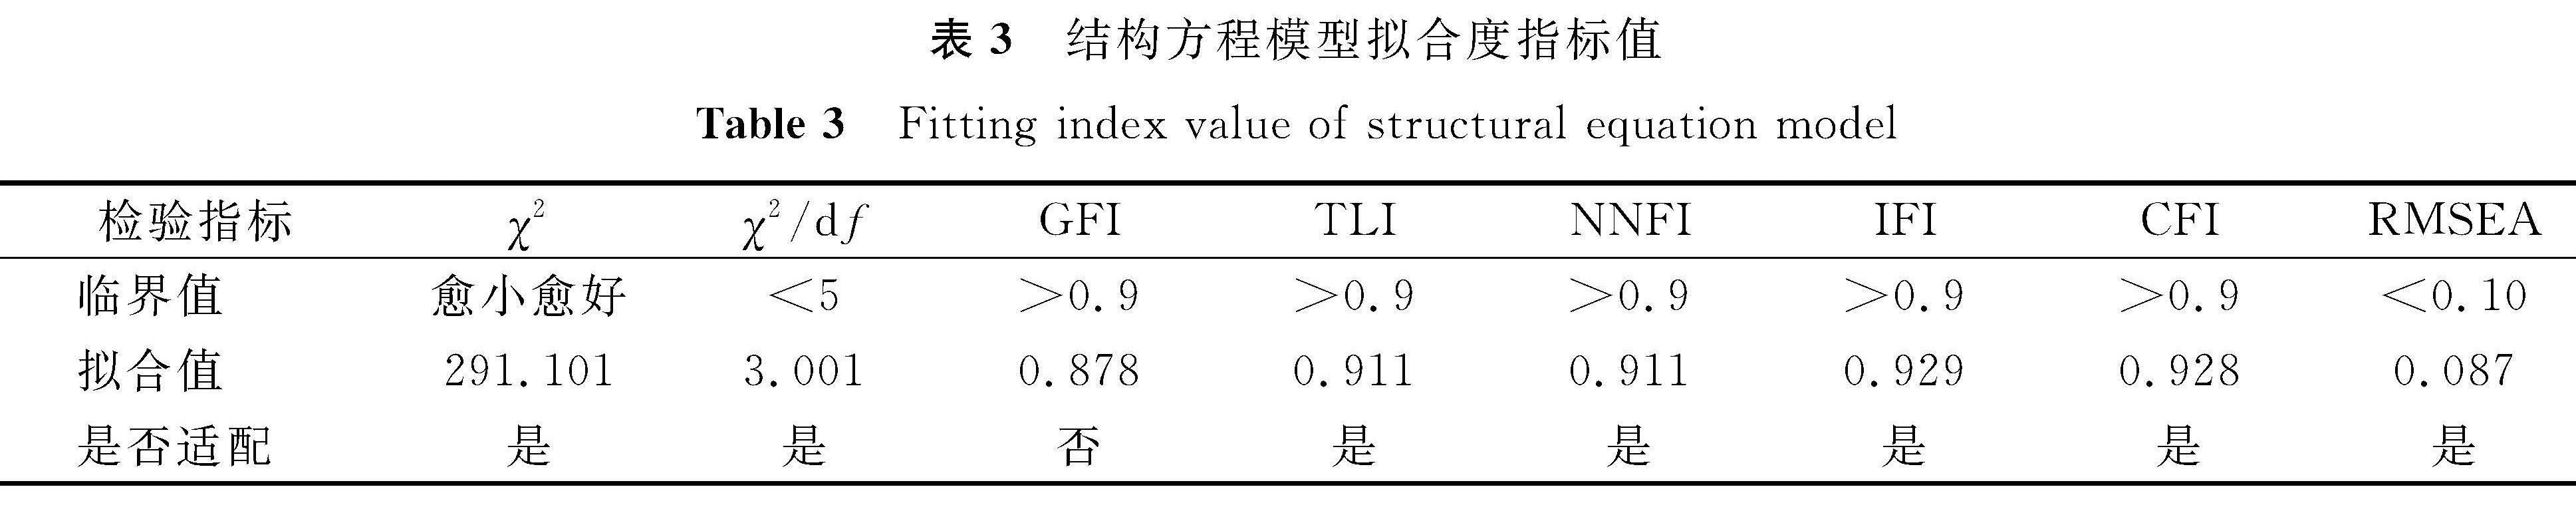 表3 结构方程模型拟合度指标值<br/>Table 3 Fitting index value of structural equation model